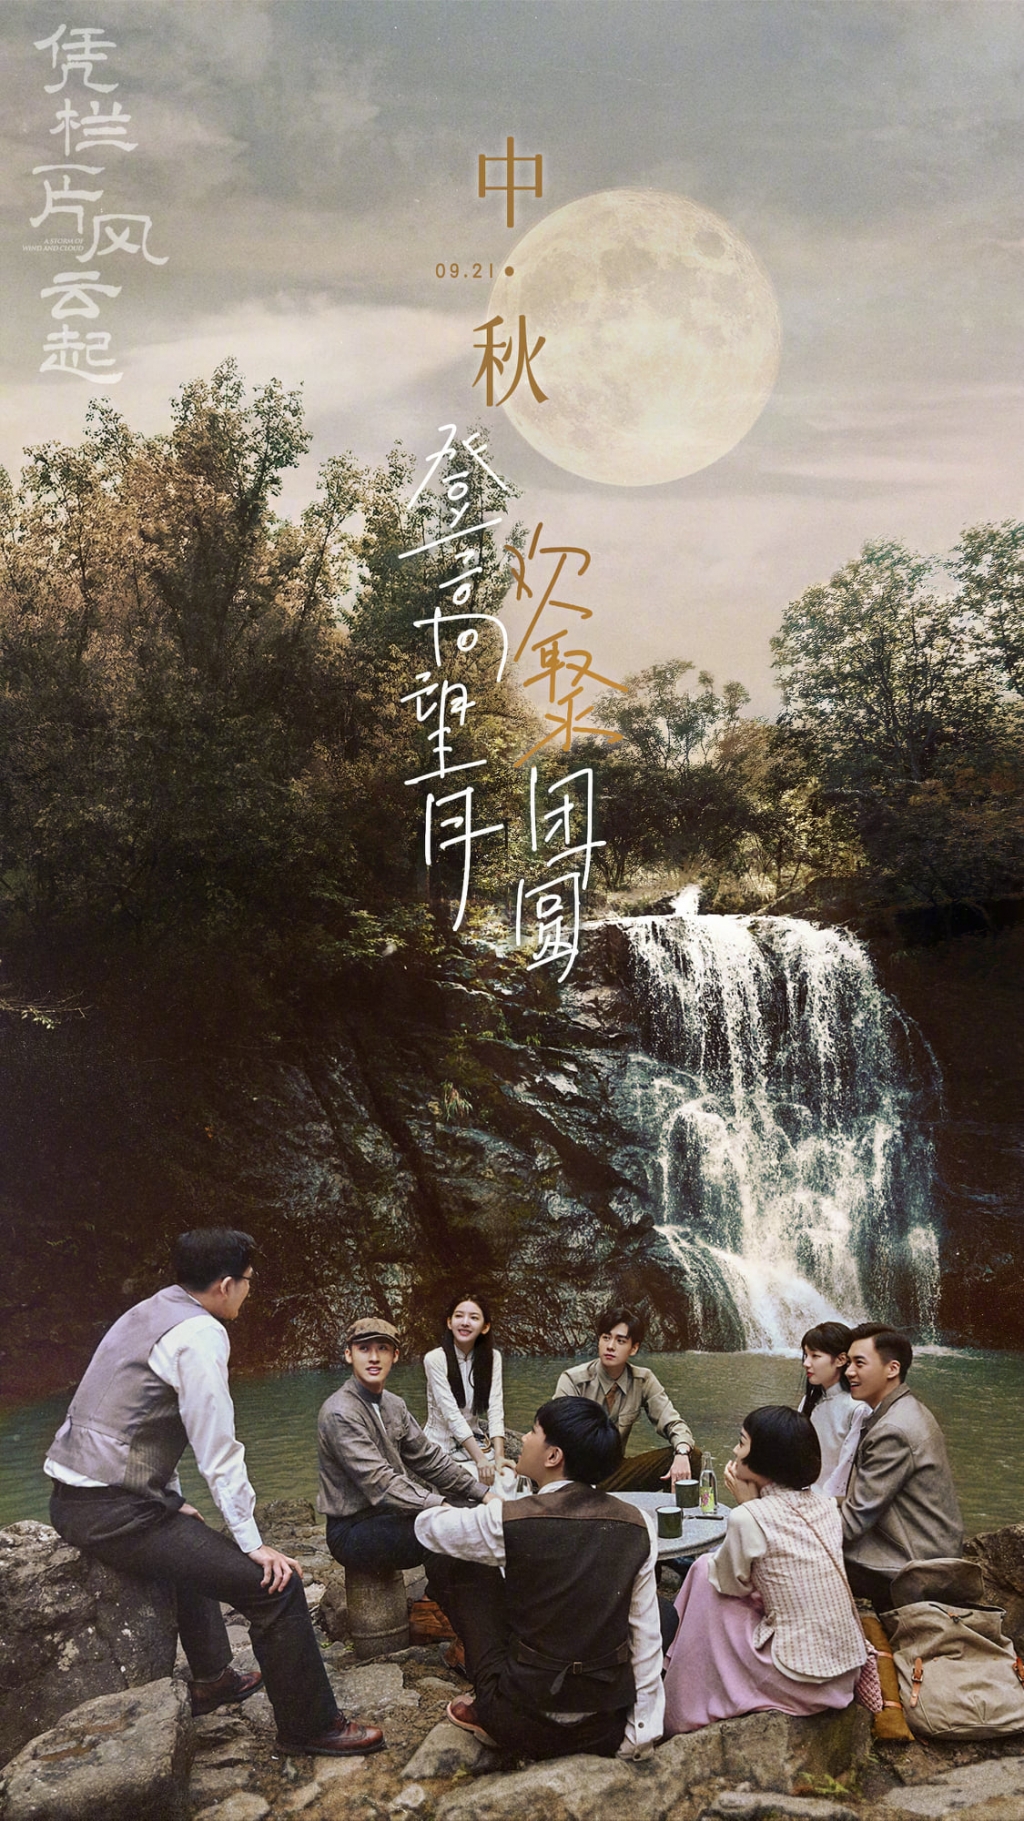 Loạt poster phim Hoa ngữ tung ra dịp Trung Thu: 'Thả Thí Thiên Hạ', 'An Lạc Truyện' của Địch Lệ Nhiệt Ba đều đủ cả